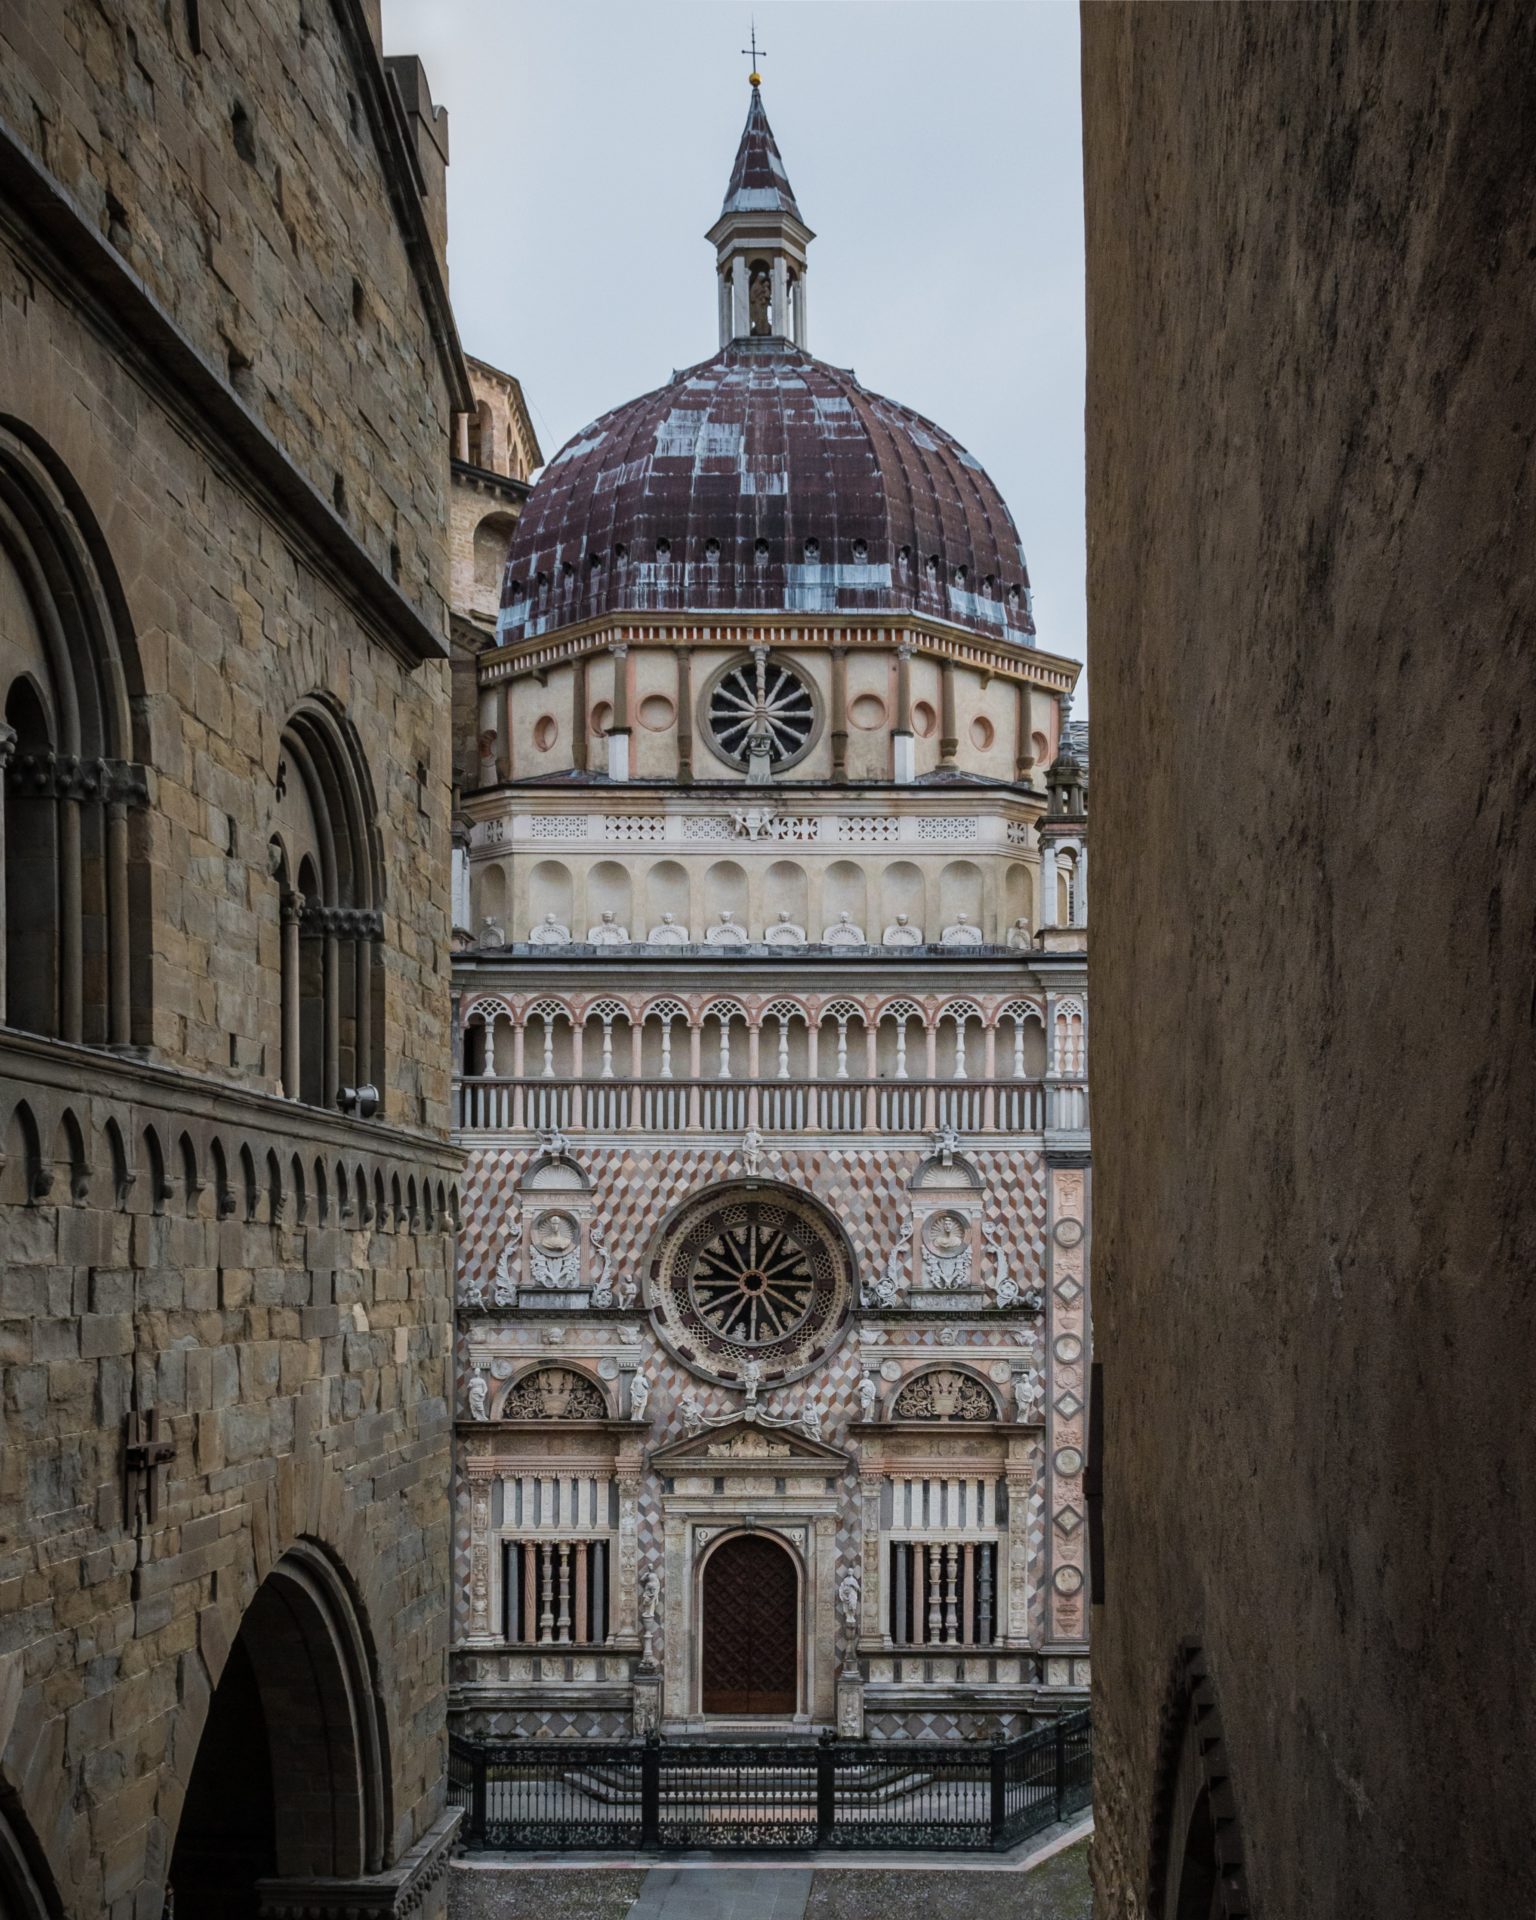 Widok na front przepięknie zdobionej bazyliki w Bergamo, gdzie można znaleźć oryginalne kształty architektoniczne lombardzkiego stylu romańskiego